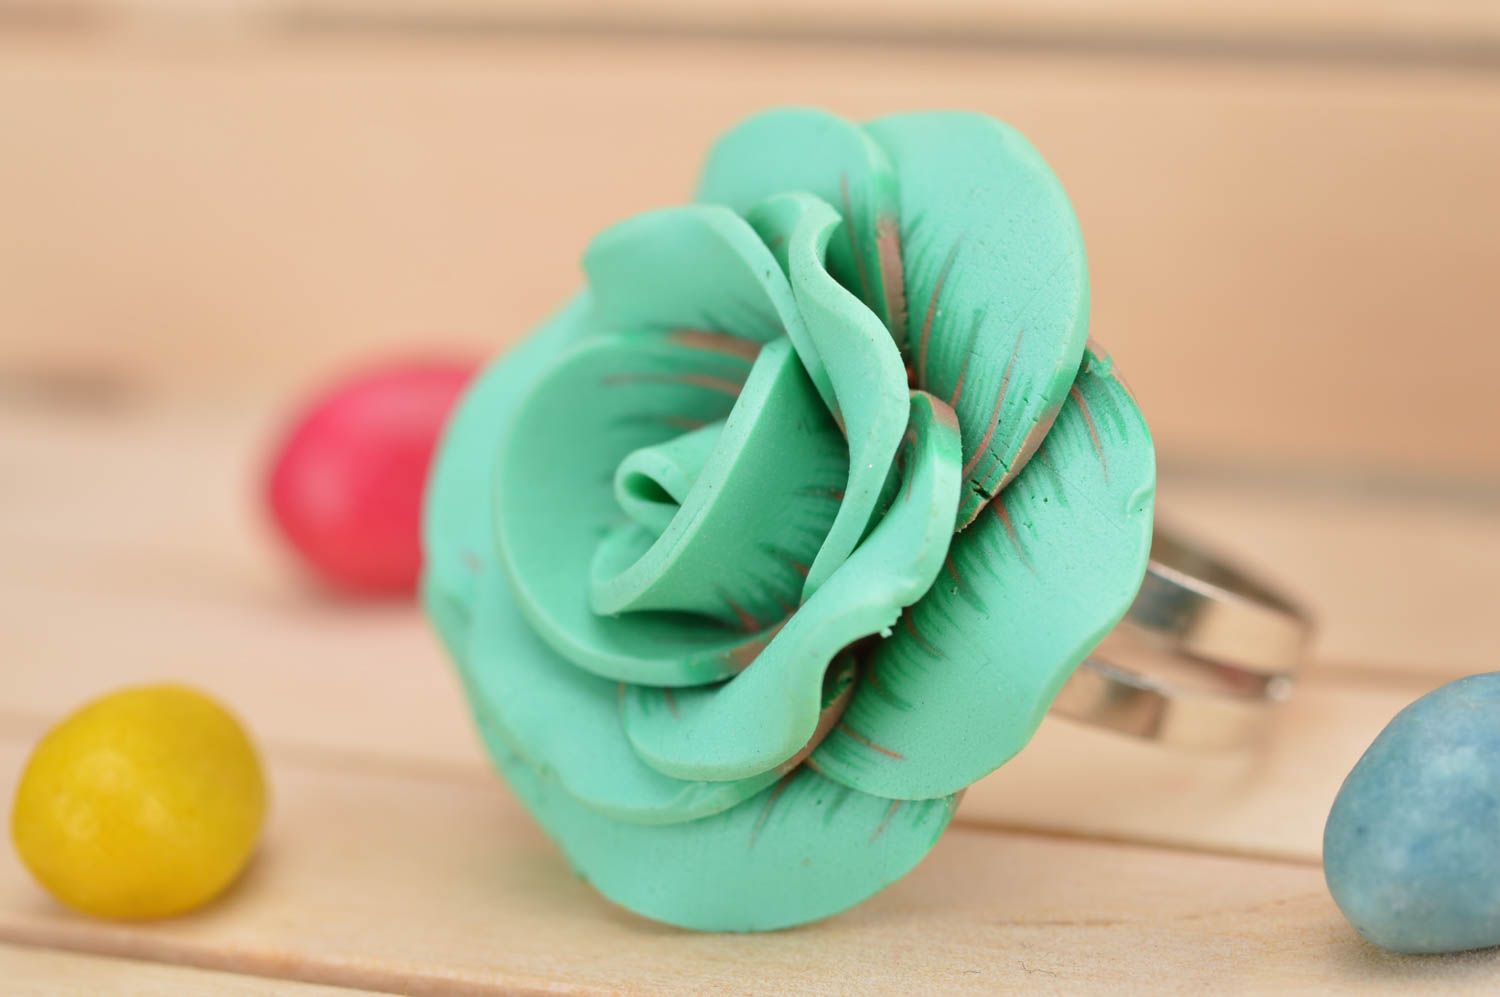 Кольцо цветок из полимерной глины зеленое в виде розы крупное ручная работа фото 1